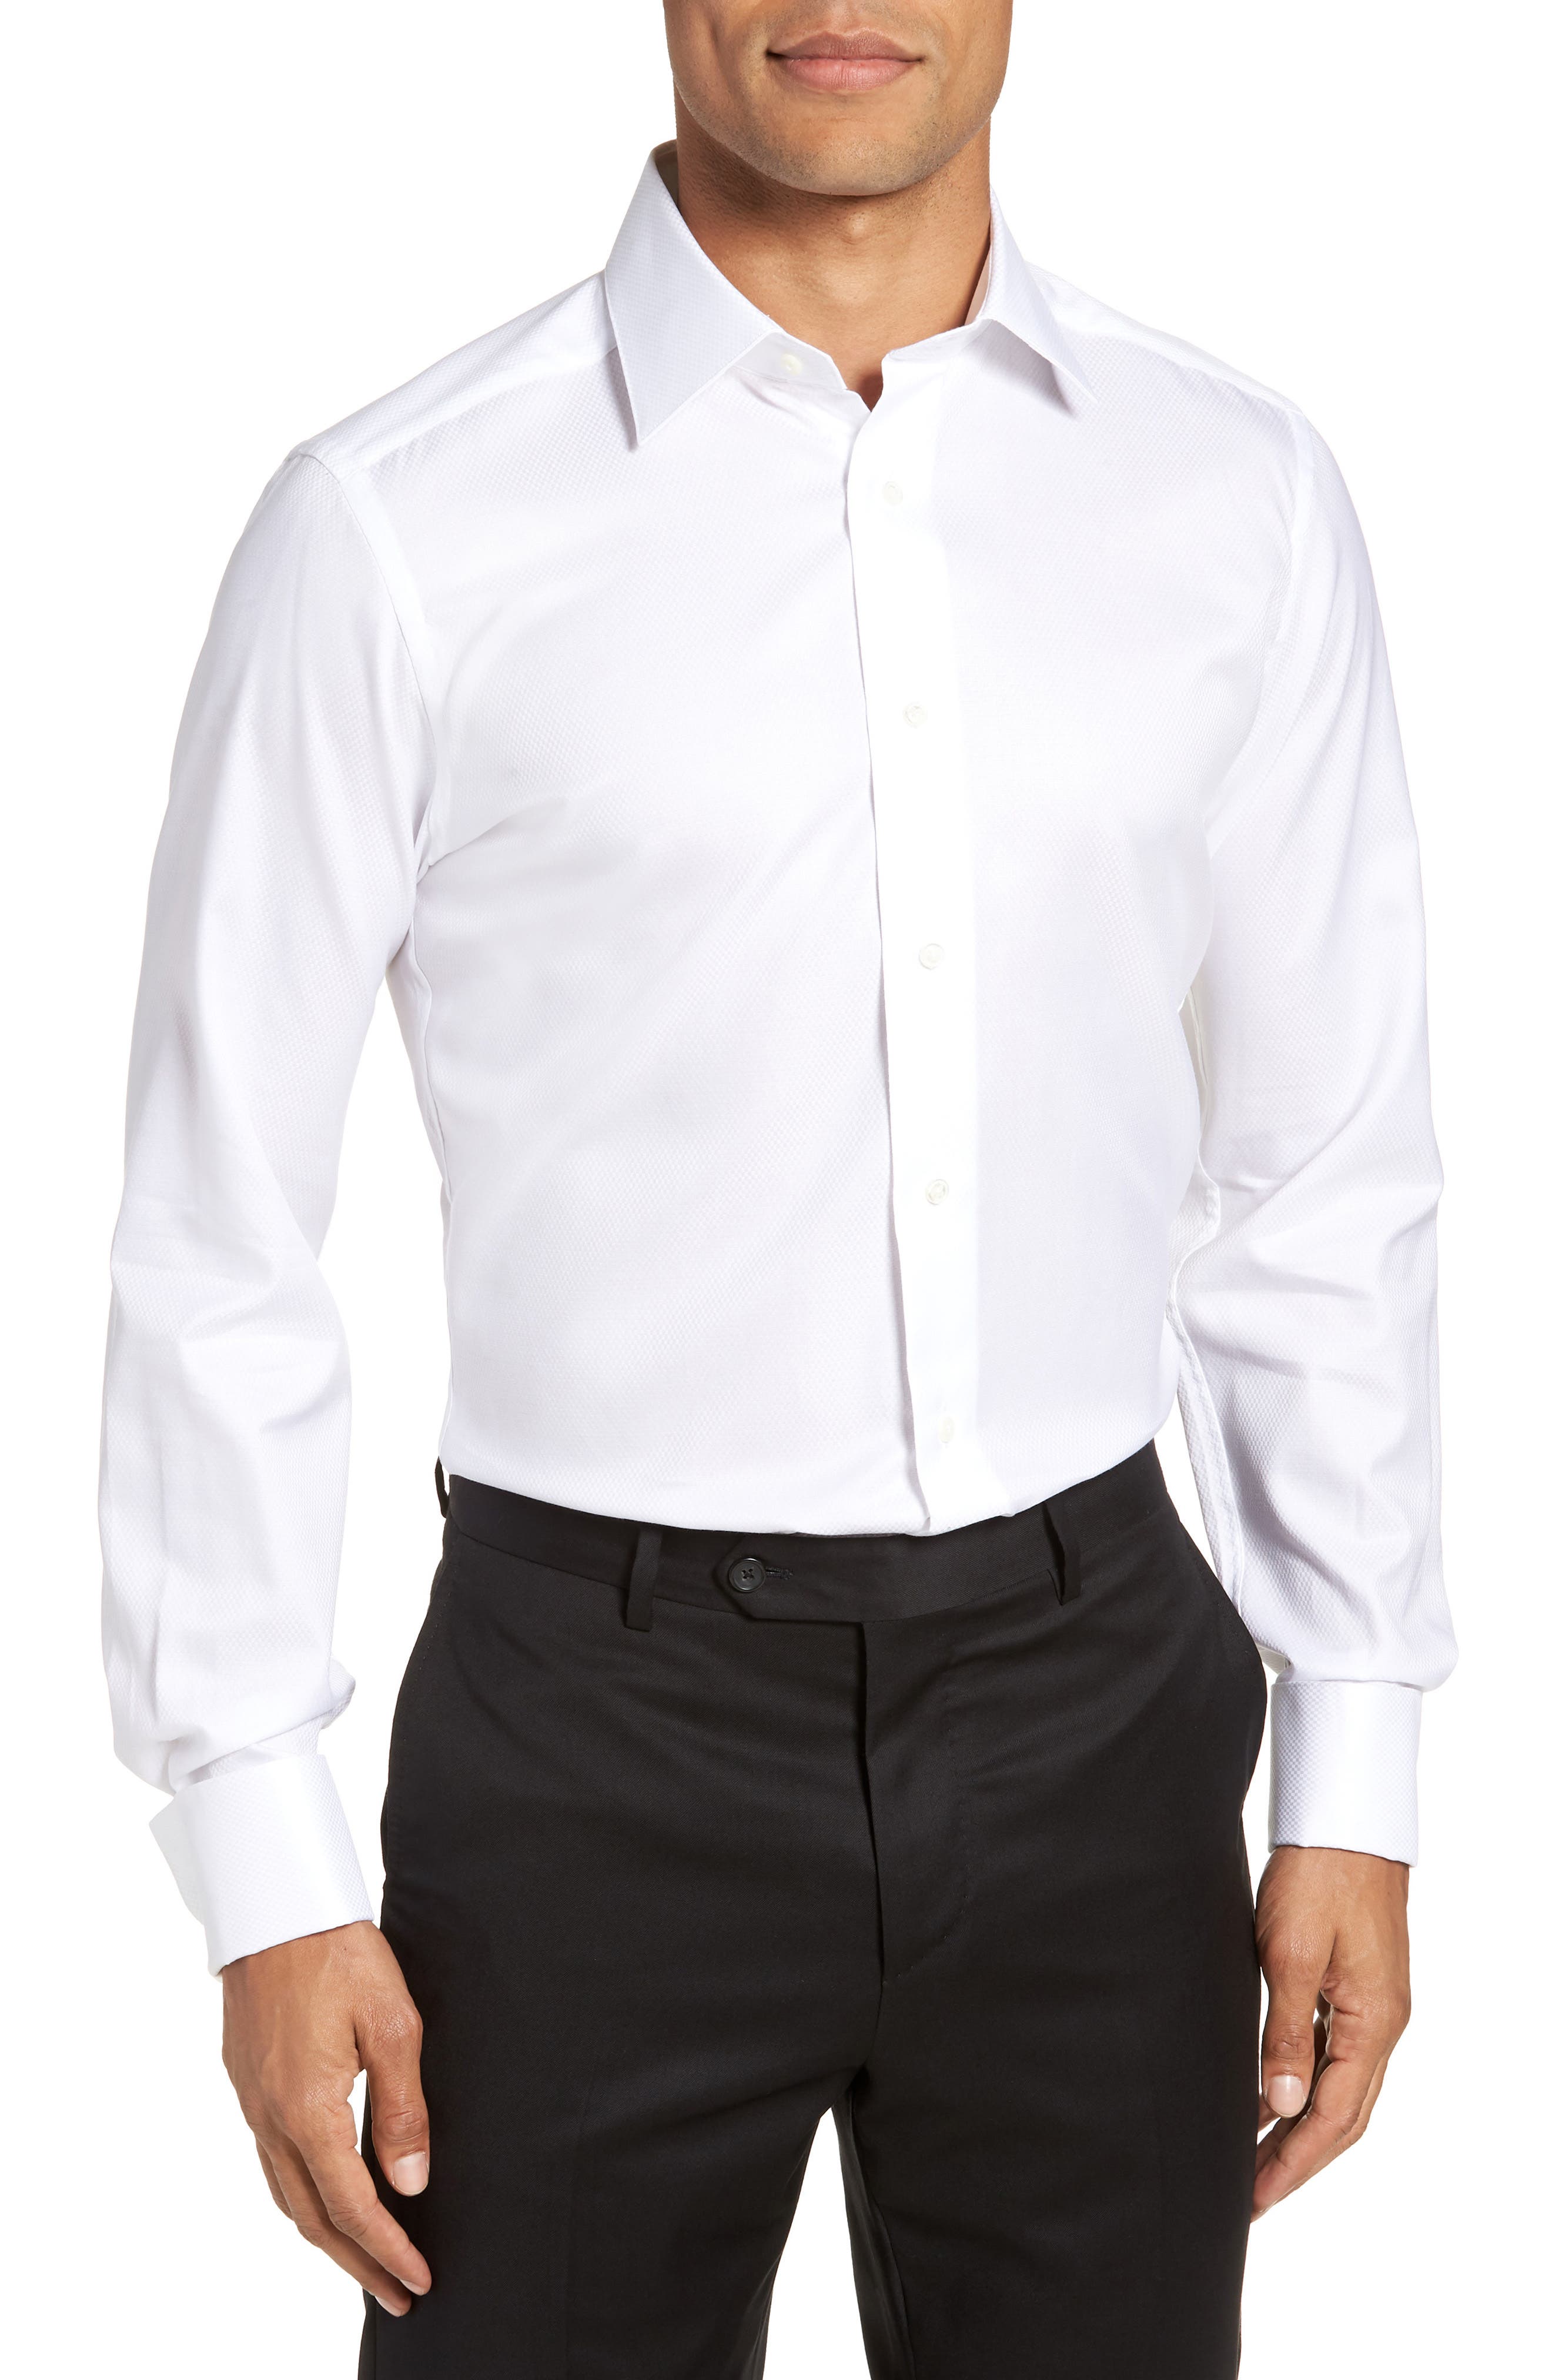 Men's White Button Down ☀ Dress Shirts ...